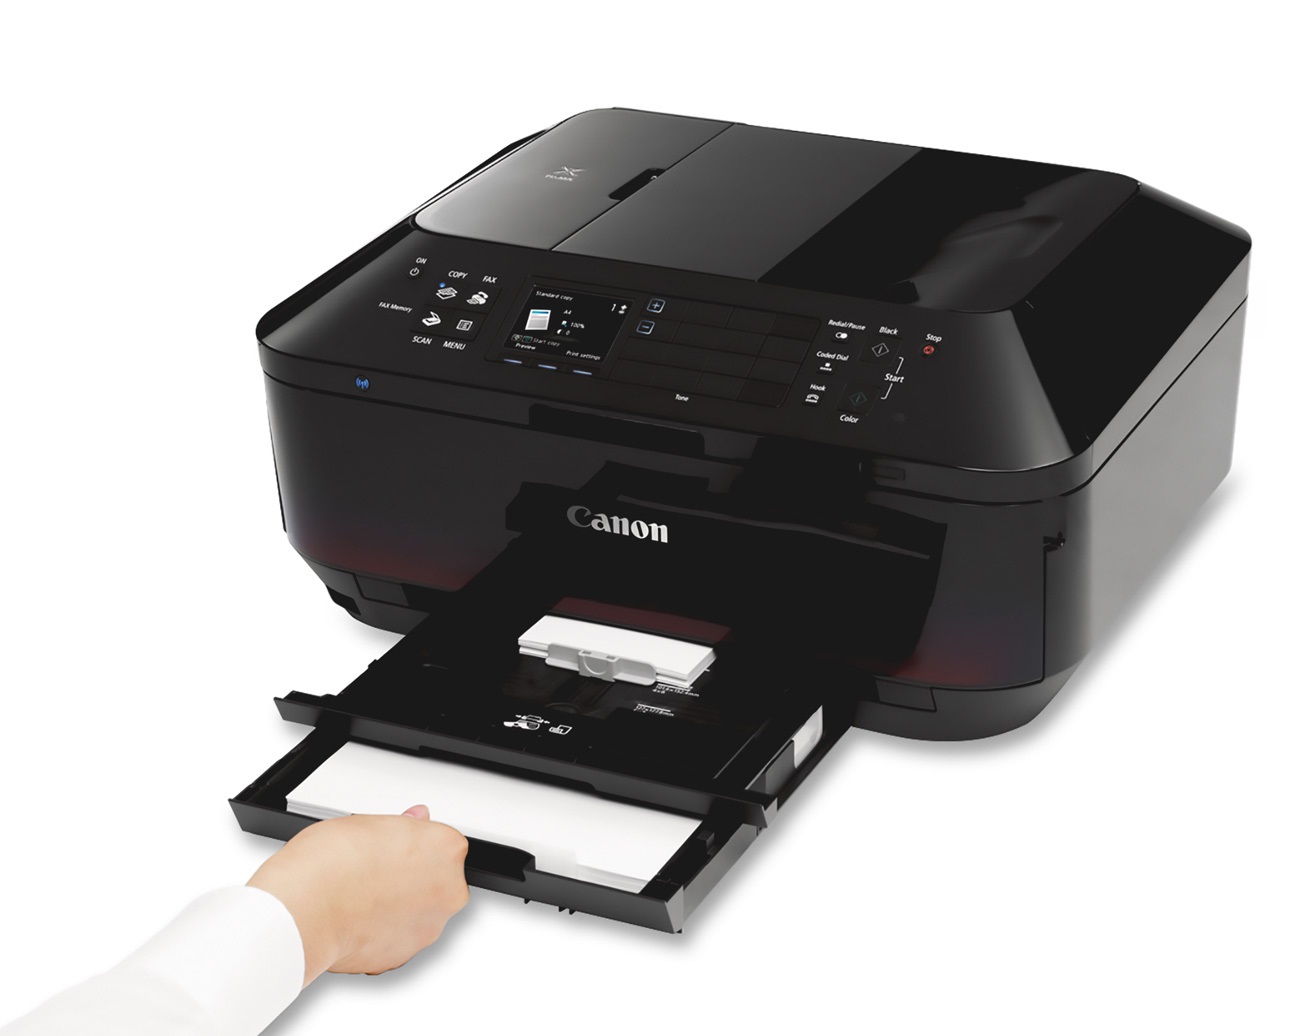 Impresora Multifuncional Canon Mx922 wifi, fax, duplex, ethernet, imprime cd y credenciales pvc